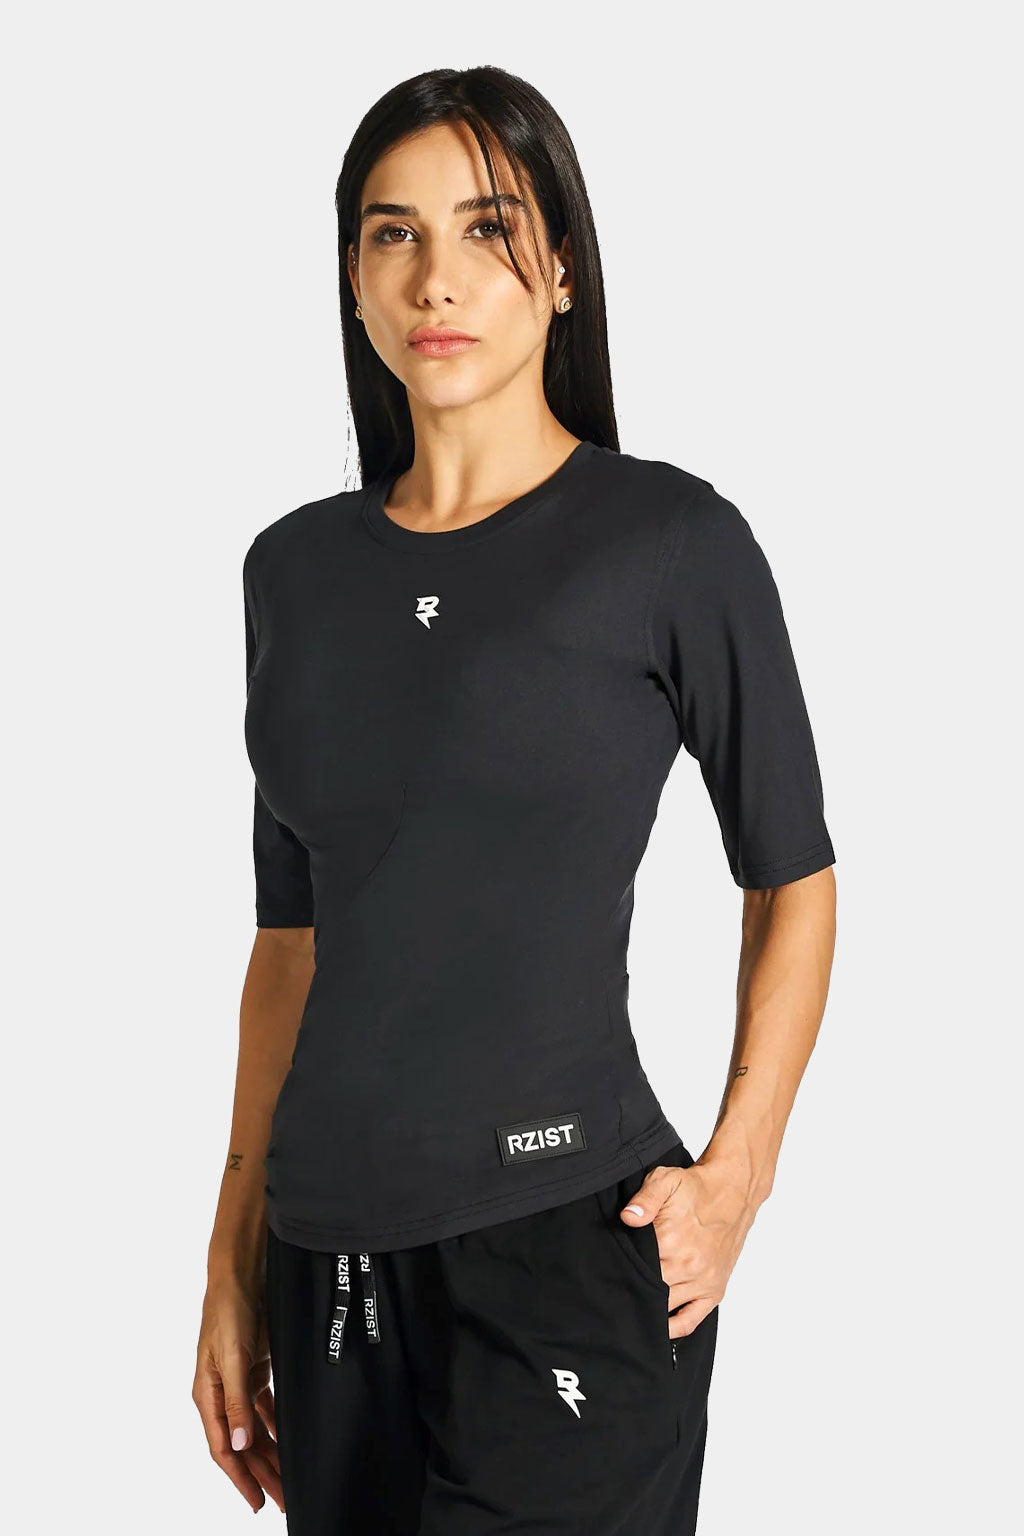 Rzist - Never Settle Women's Scallop Hem T-shirt